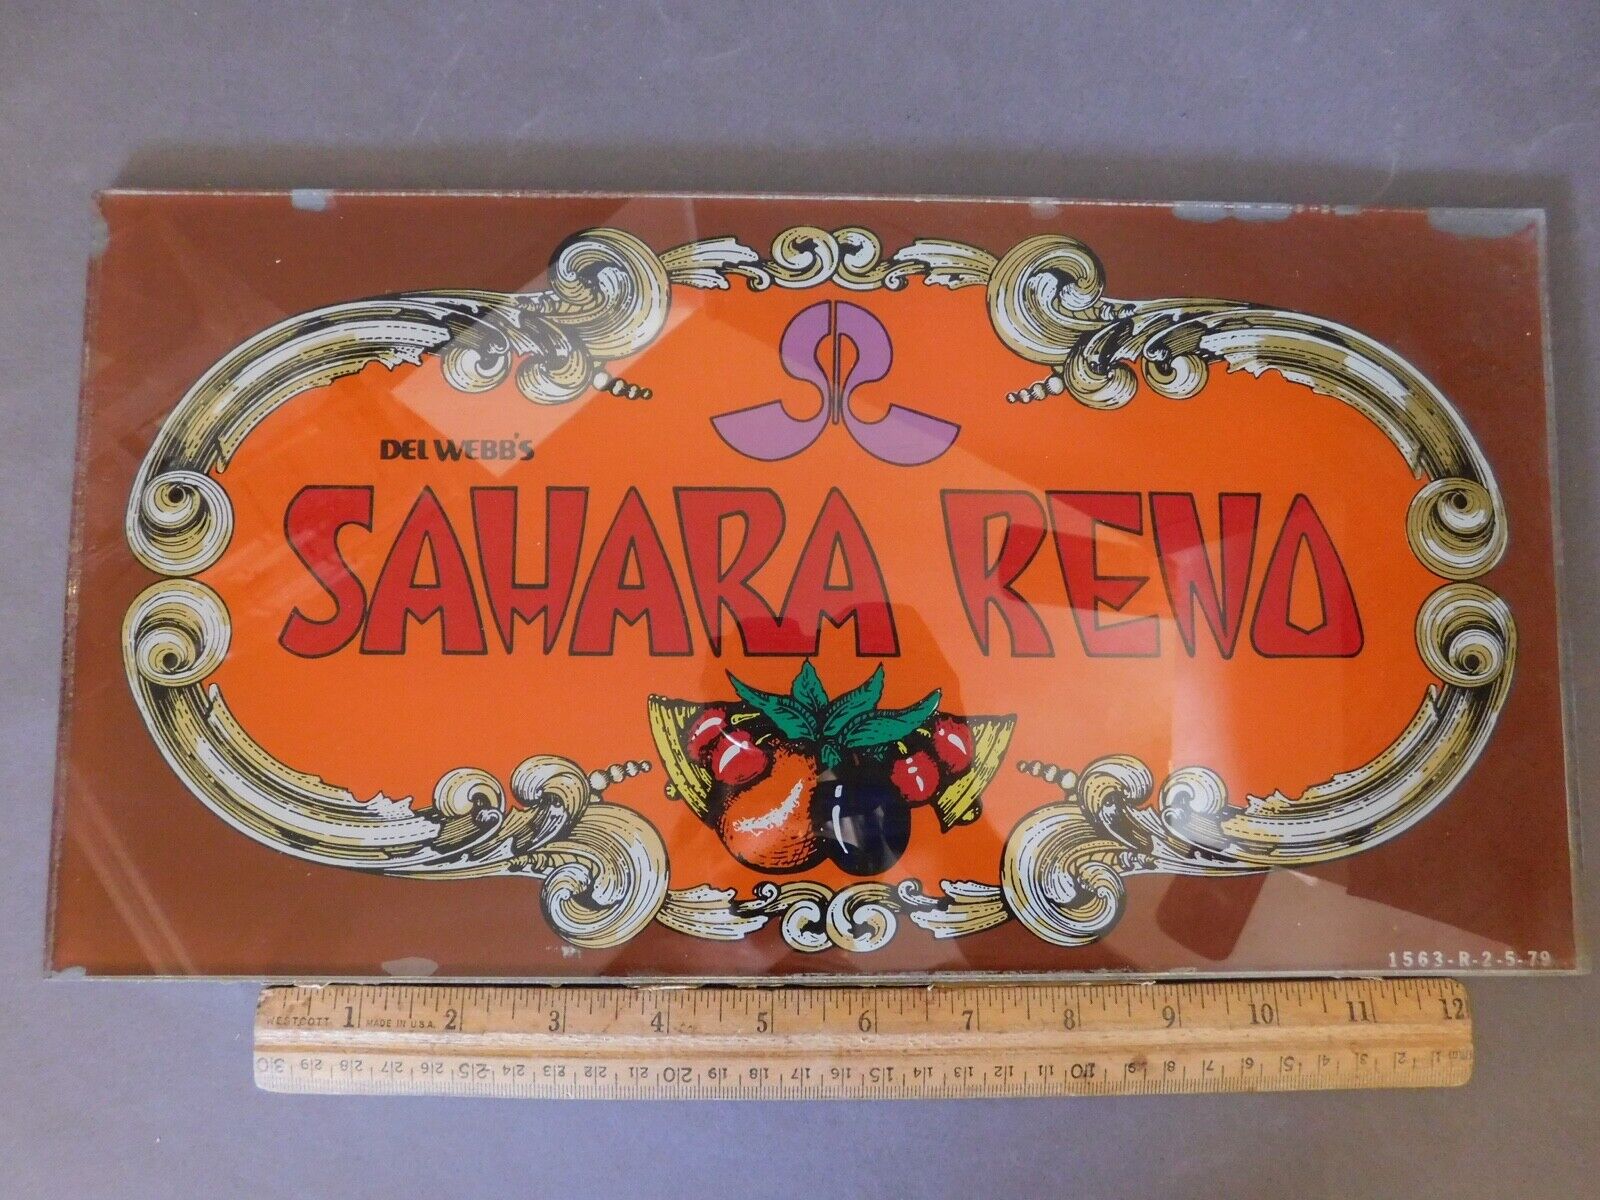 Vintage Slot Machine Glass Del Webb's Sahara Reno 1563-r-2-5-79 Free Shipping